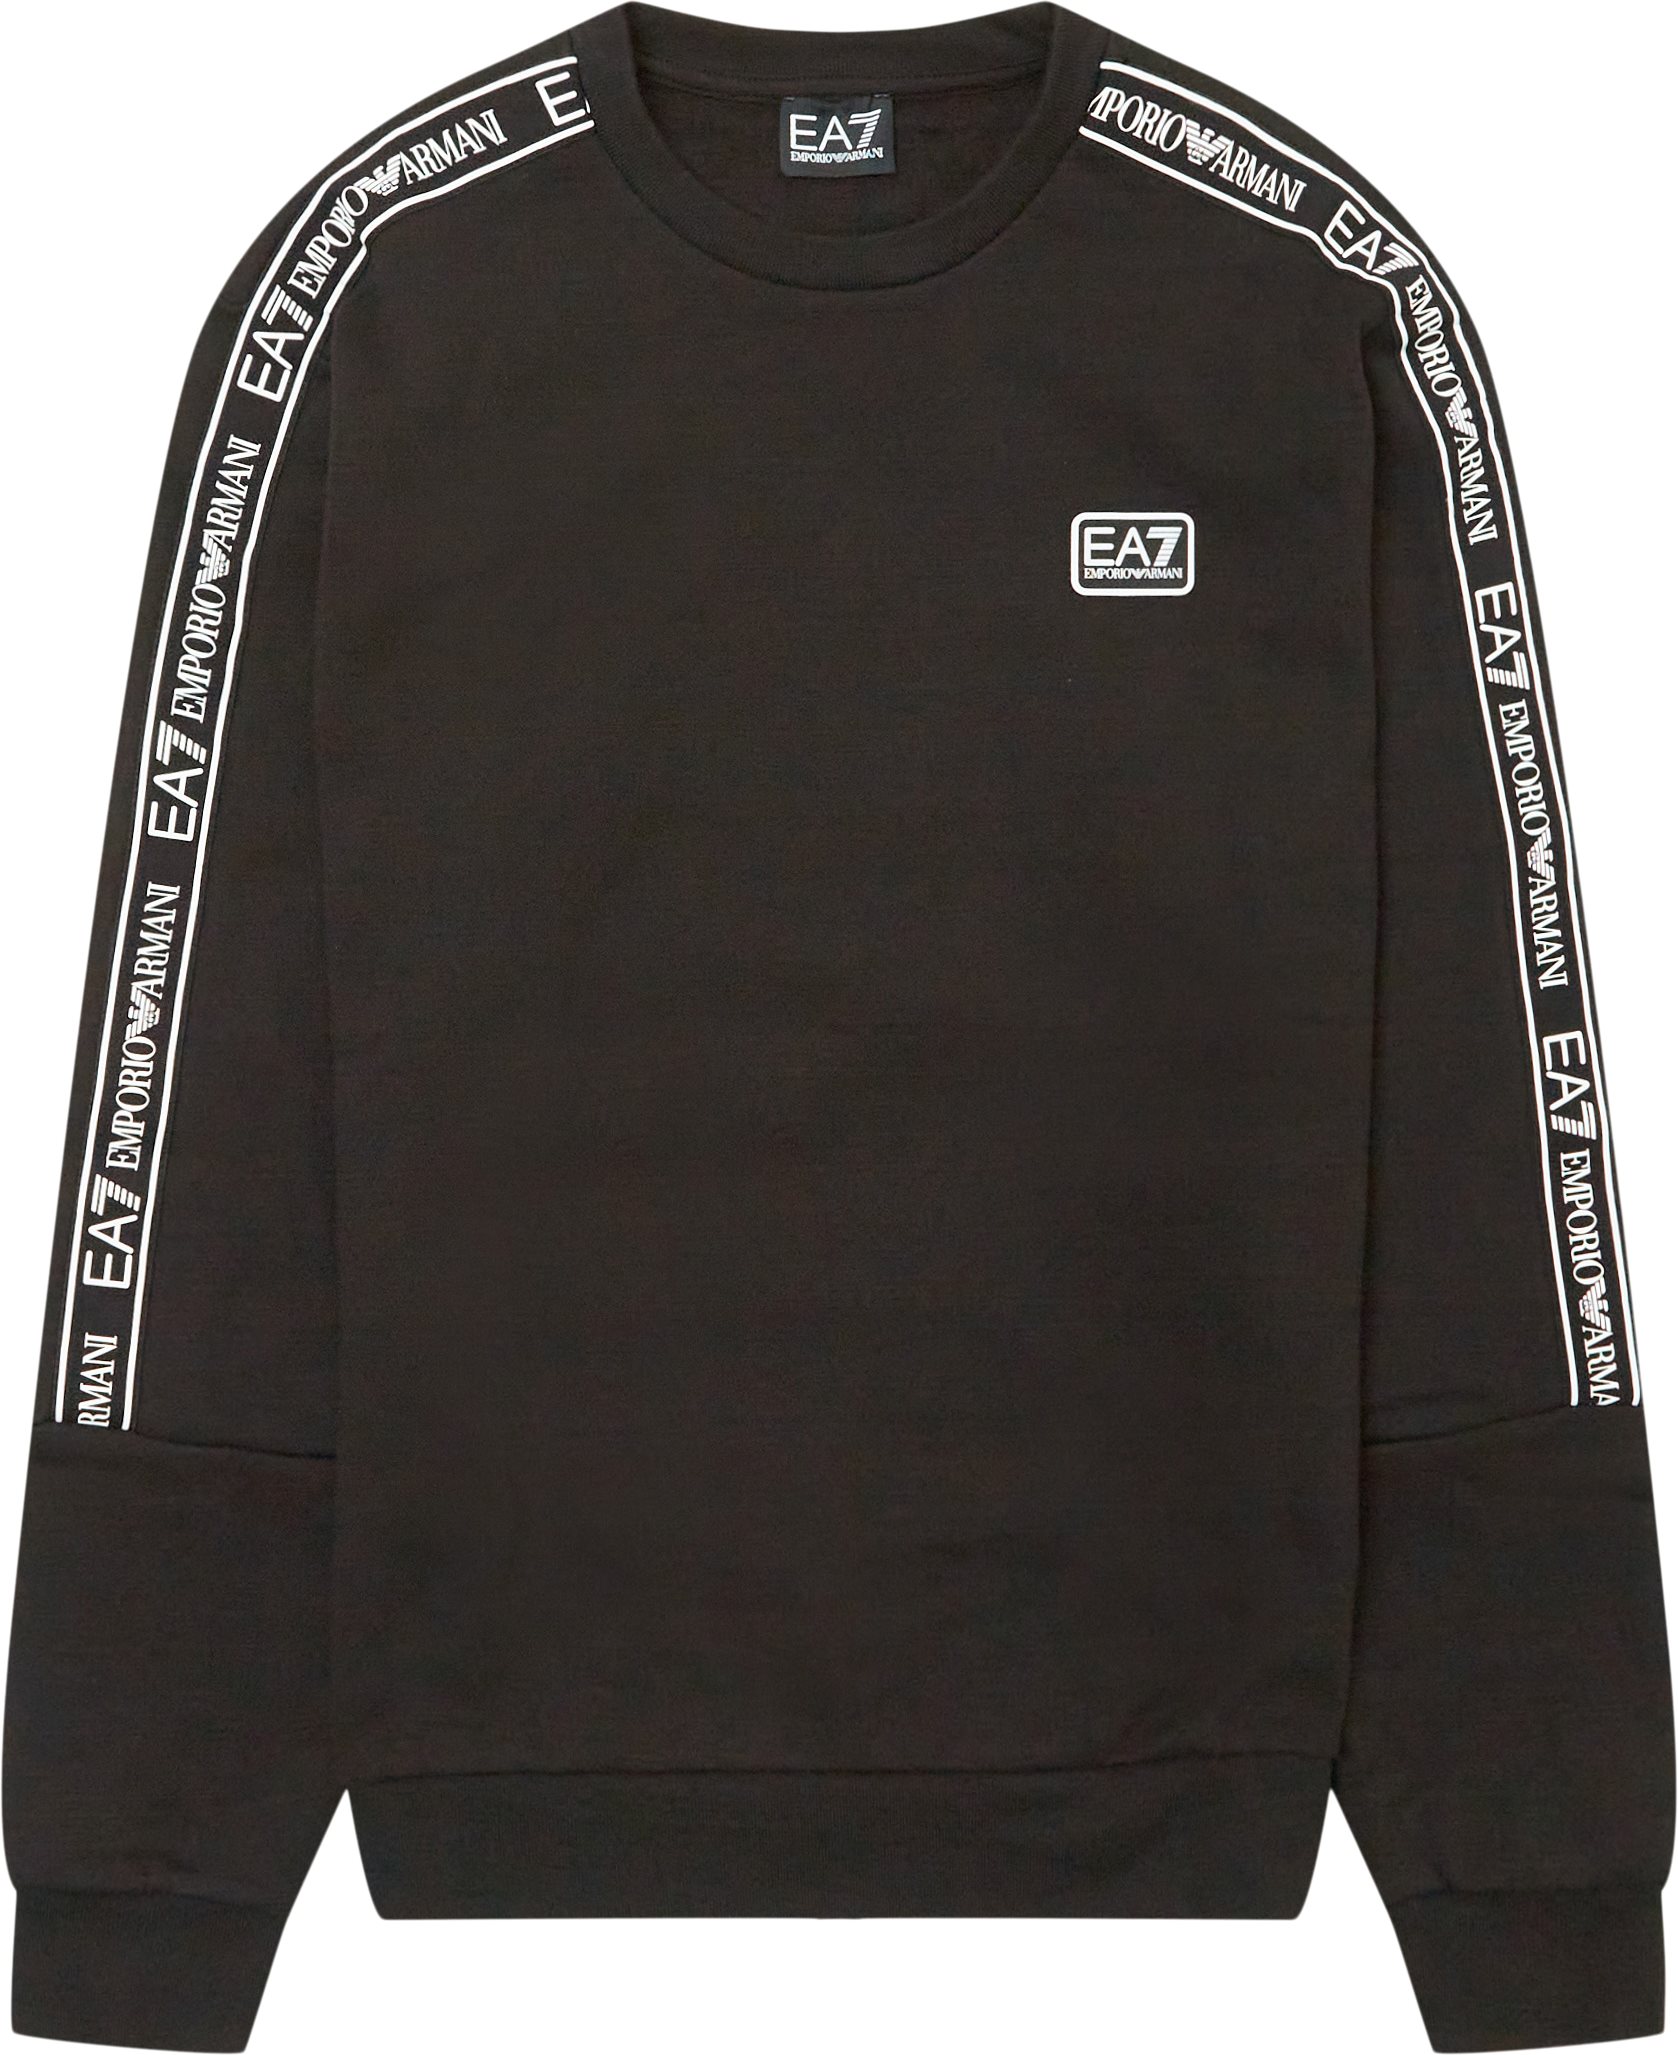 Pj07z-3lpm42 Sweatshirt - Sweatshirts - Regular fit - Black